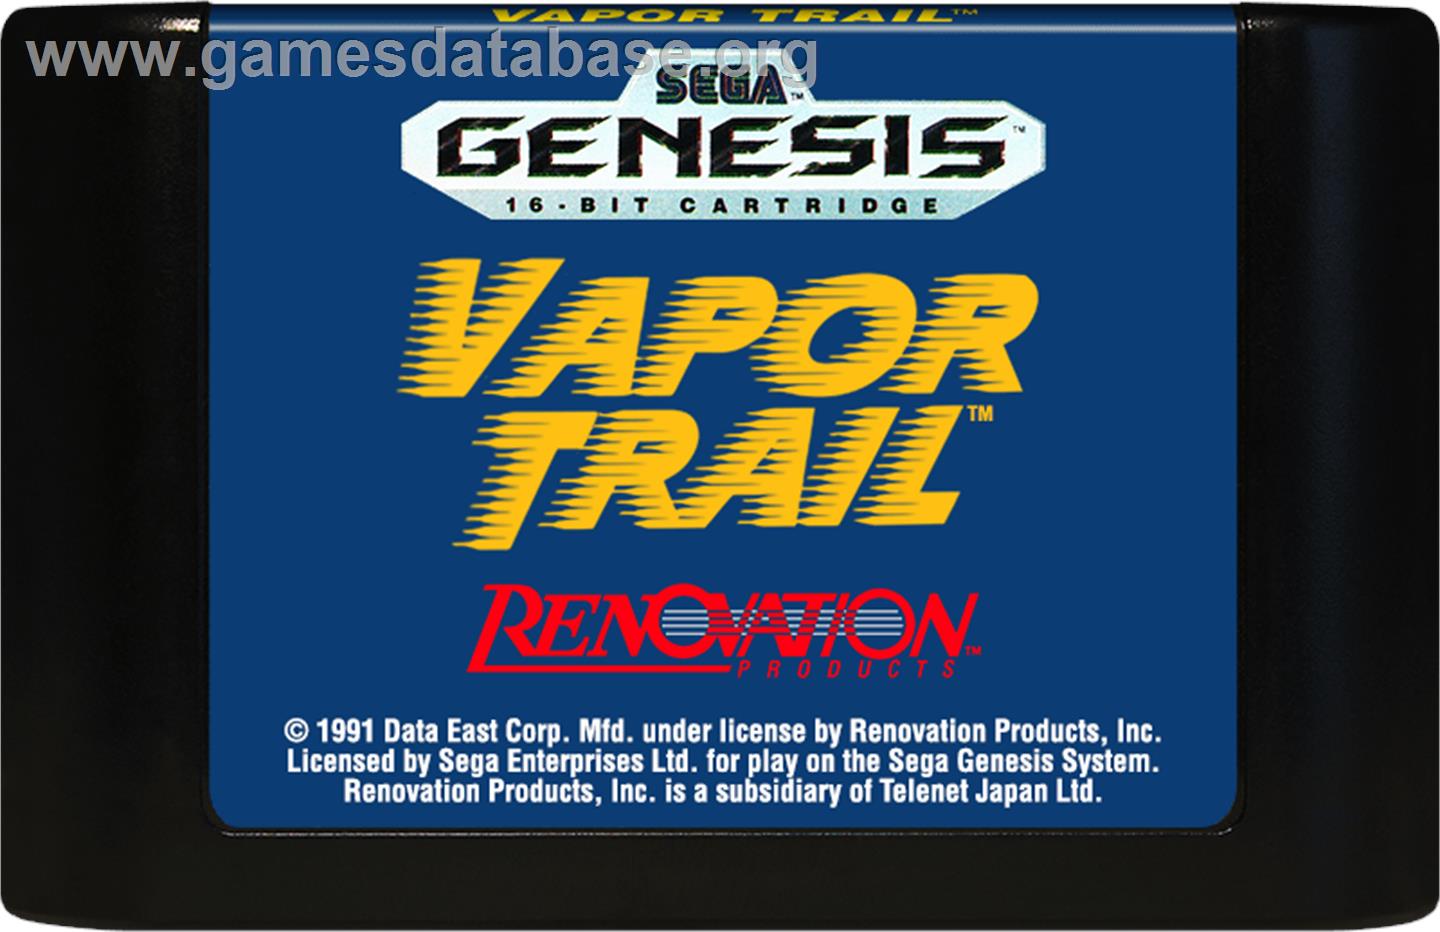 Vapor Trail - Sega Genesis - Artwork - Cartridge